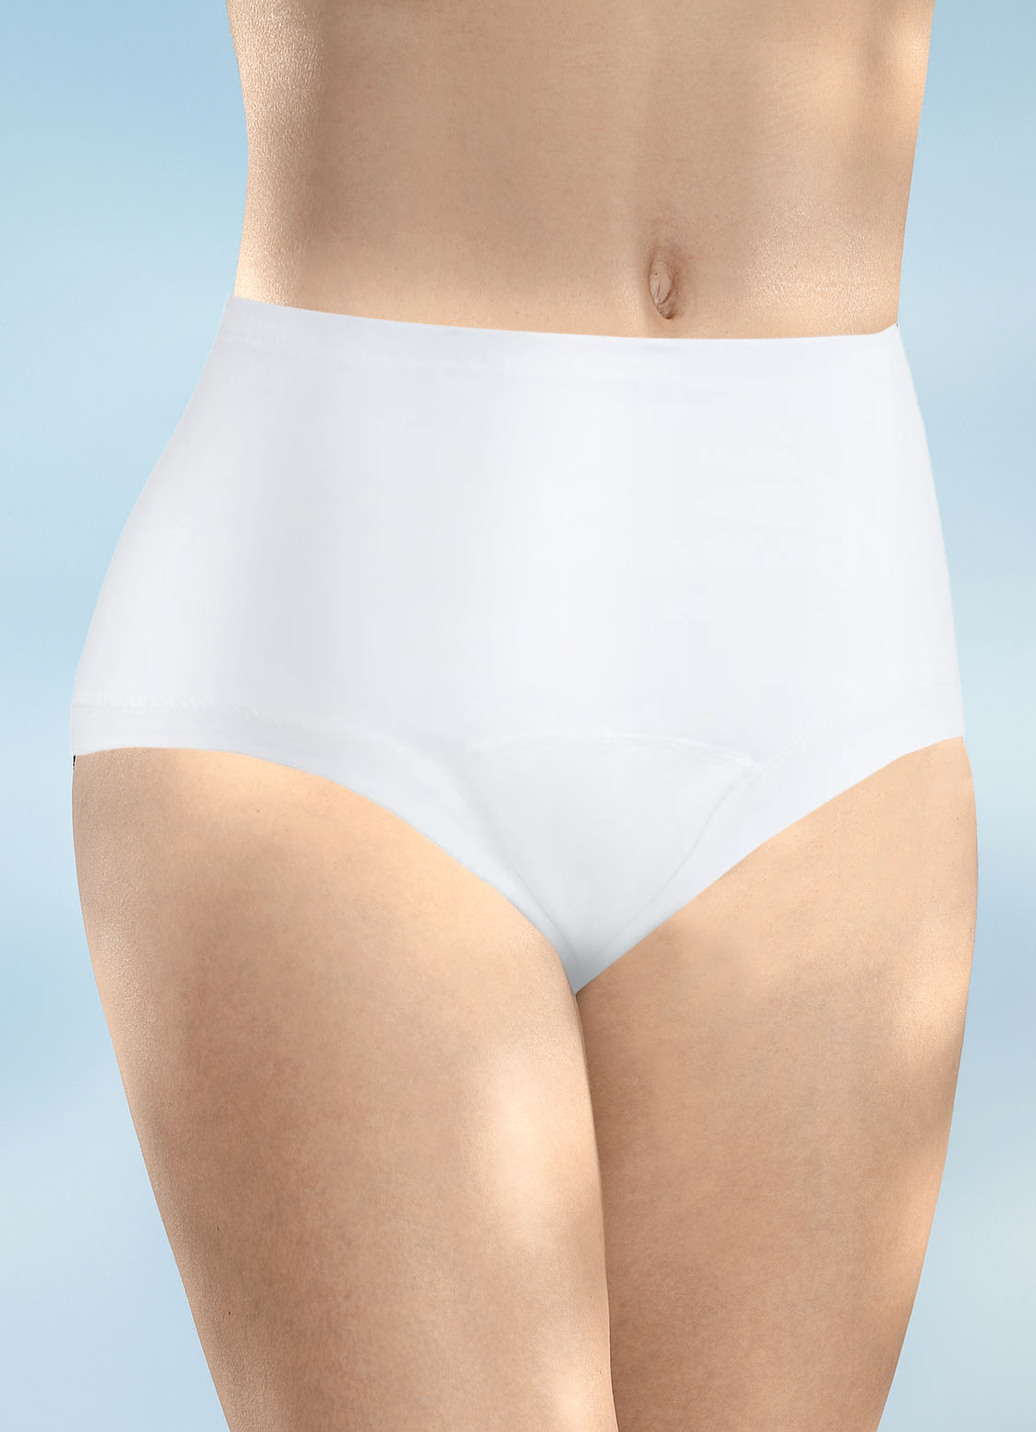 Damen Inkontinenz Taillenslip mit Auslaufschutz von Con-ta, Taillenslip, Größe 4 (50/52), Weiss von CON-TA